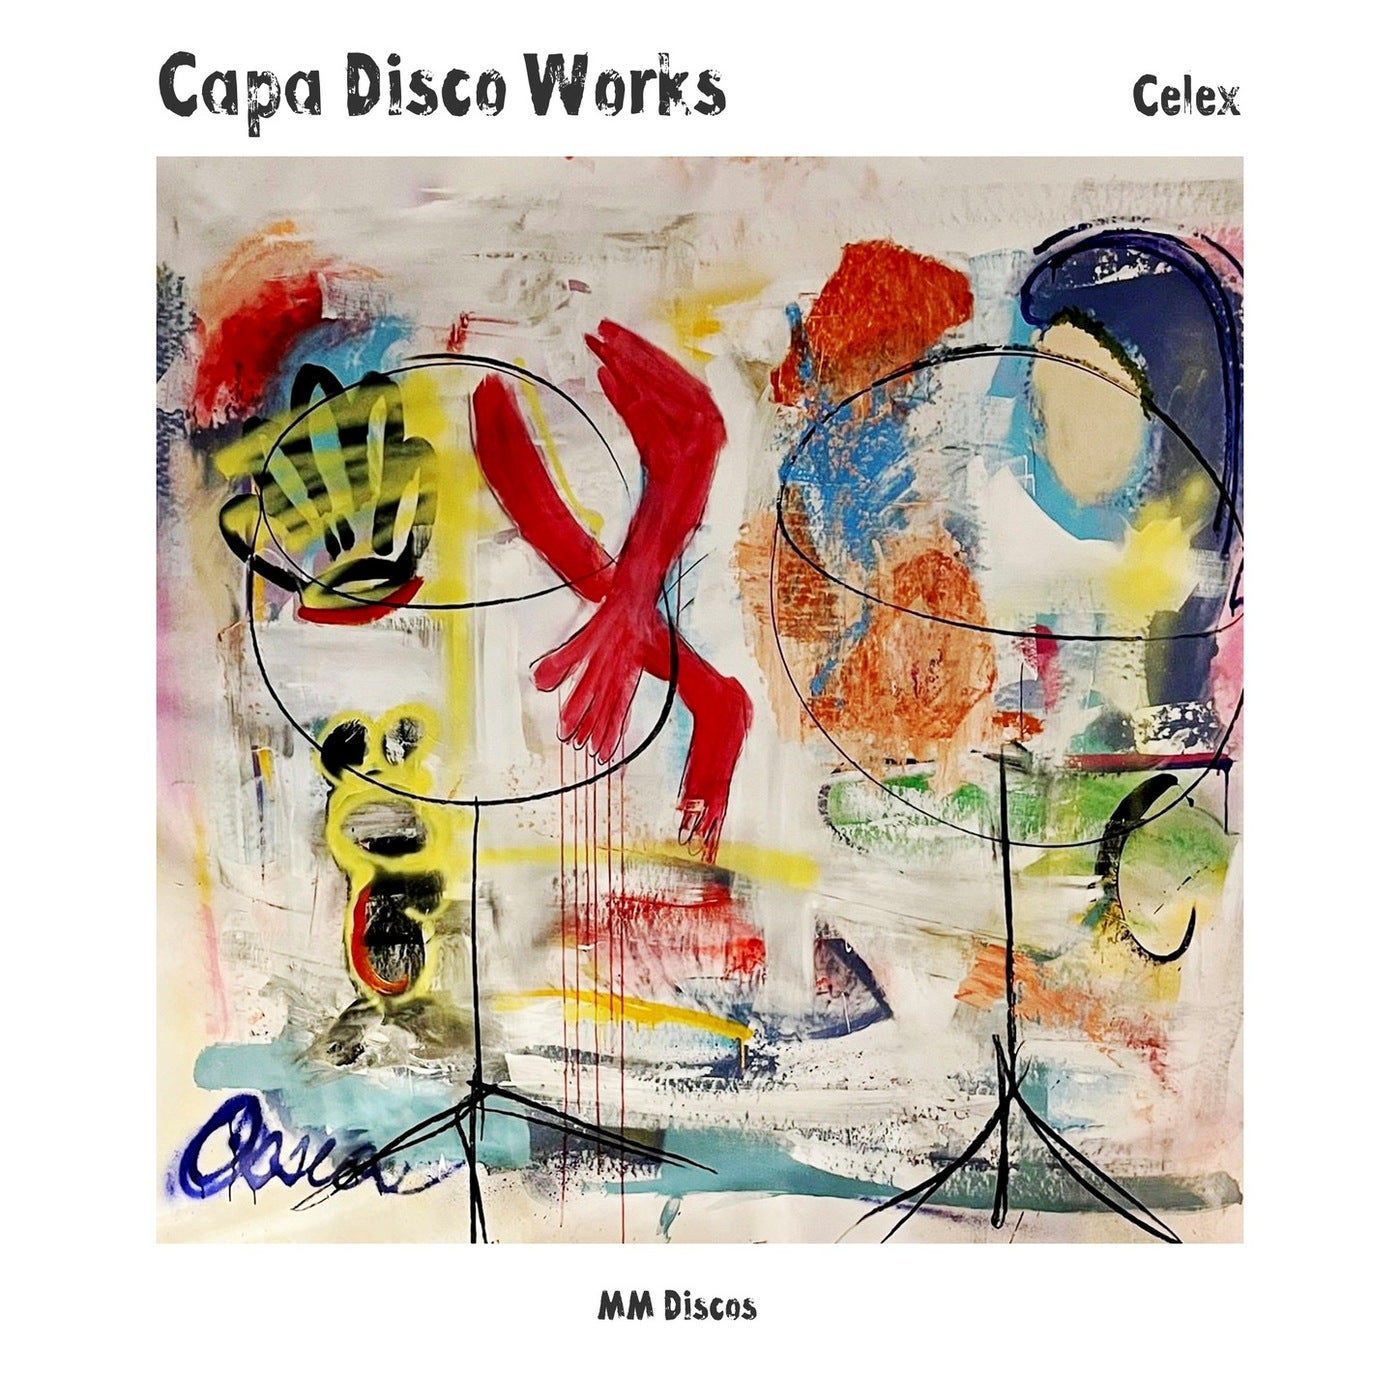 Capa Disco Works (Mini Album)